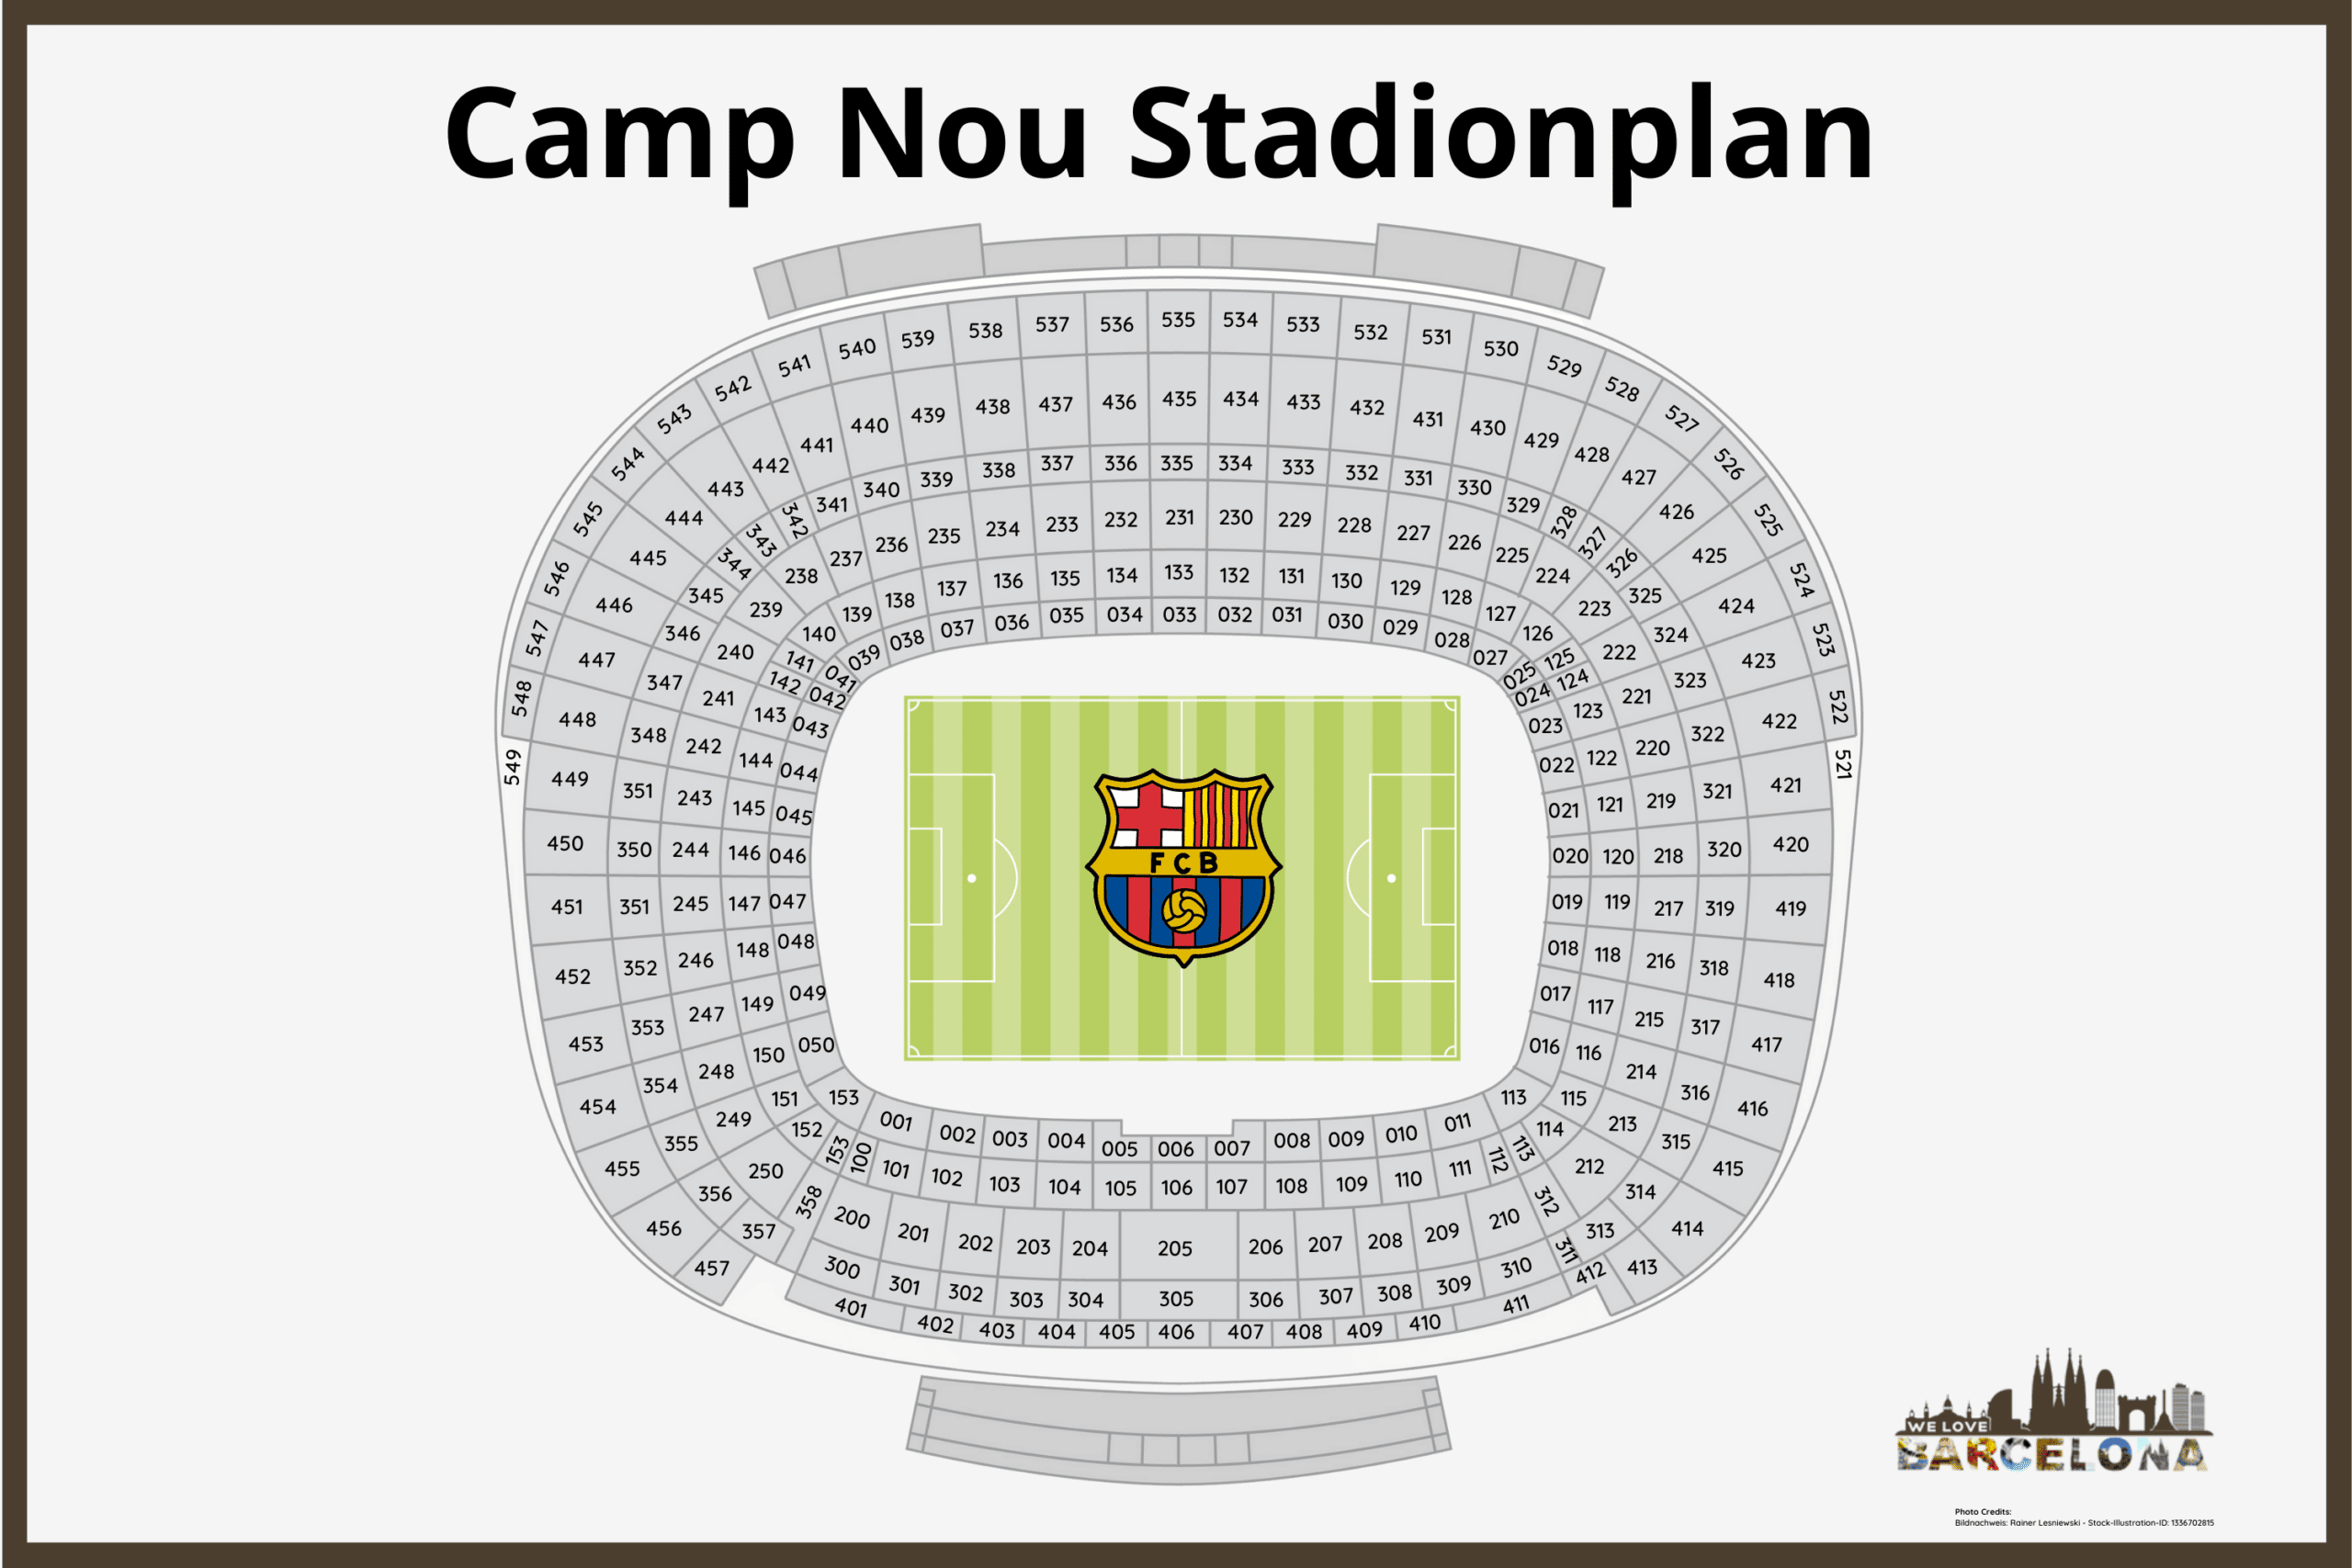 Stadionplan mit allen Blöcken im Camp Nou